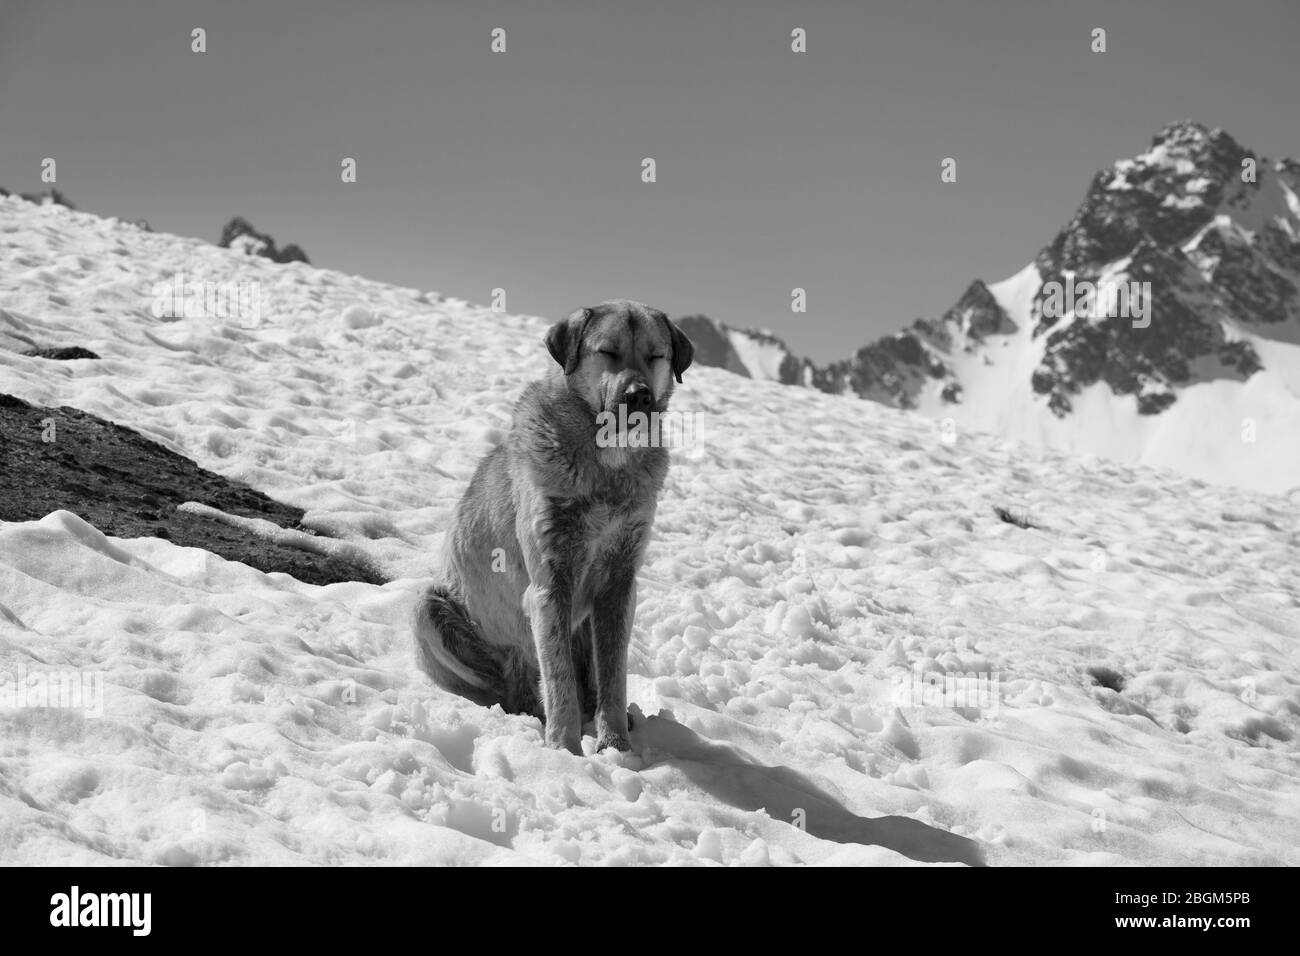 Hund sonnen in der Sonne Schrauben Sie die Augen auf Schnee an sonnigen Tag, hohe schneebedeckte Berge und klaren Himmel im Hintergrund. Türkei, Kachkar Berge, höchster Teil von Stockfoto